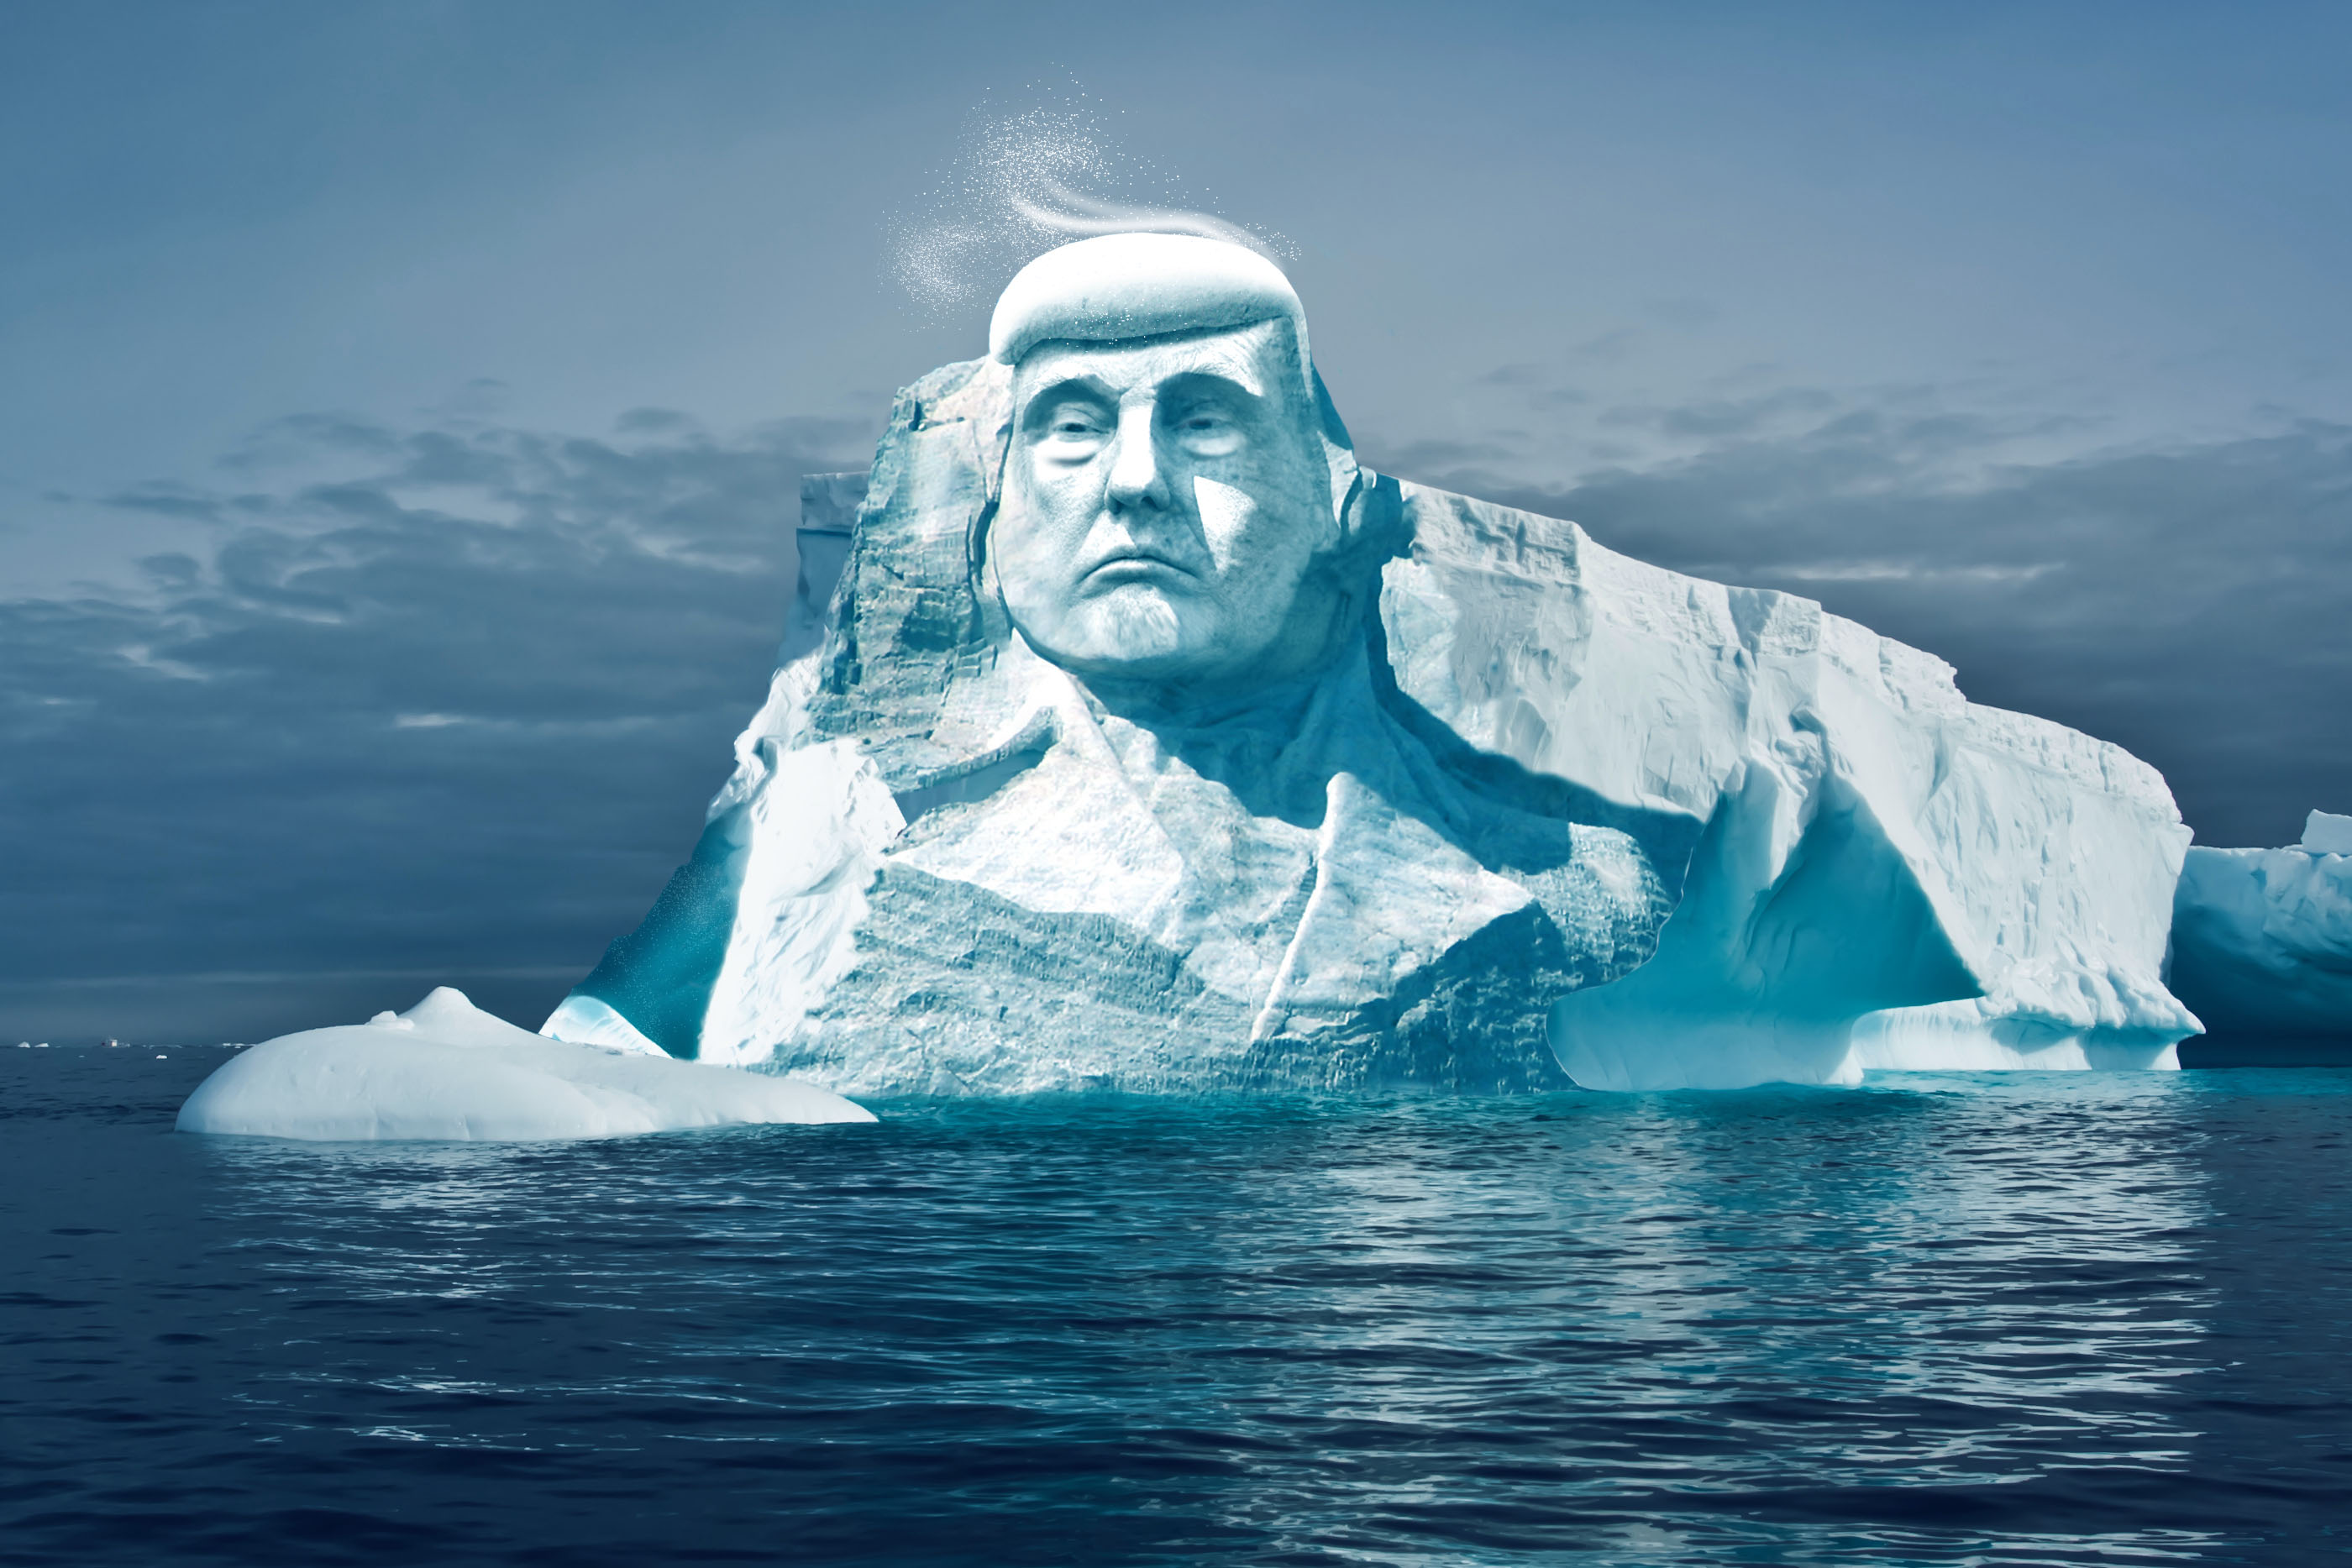 Recreación de la escultura de Trump en el Ártico. Image: The Proyect Trumpmore